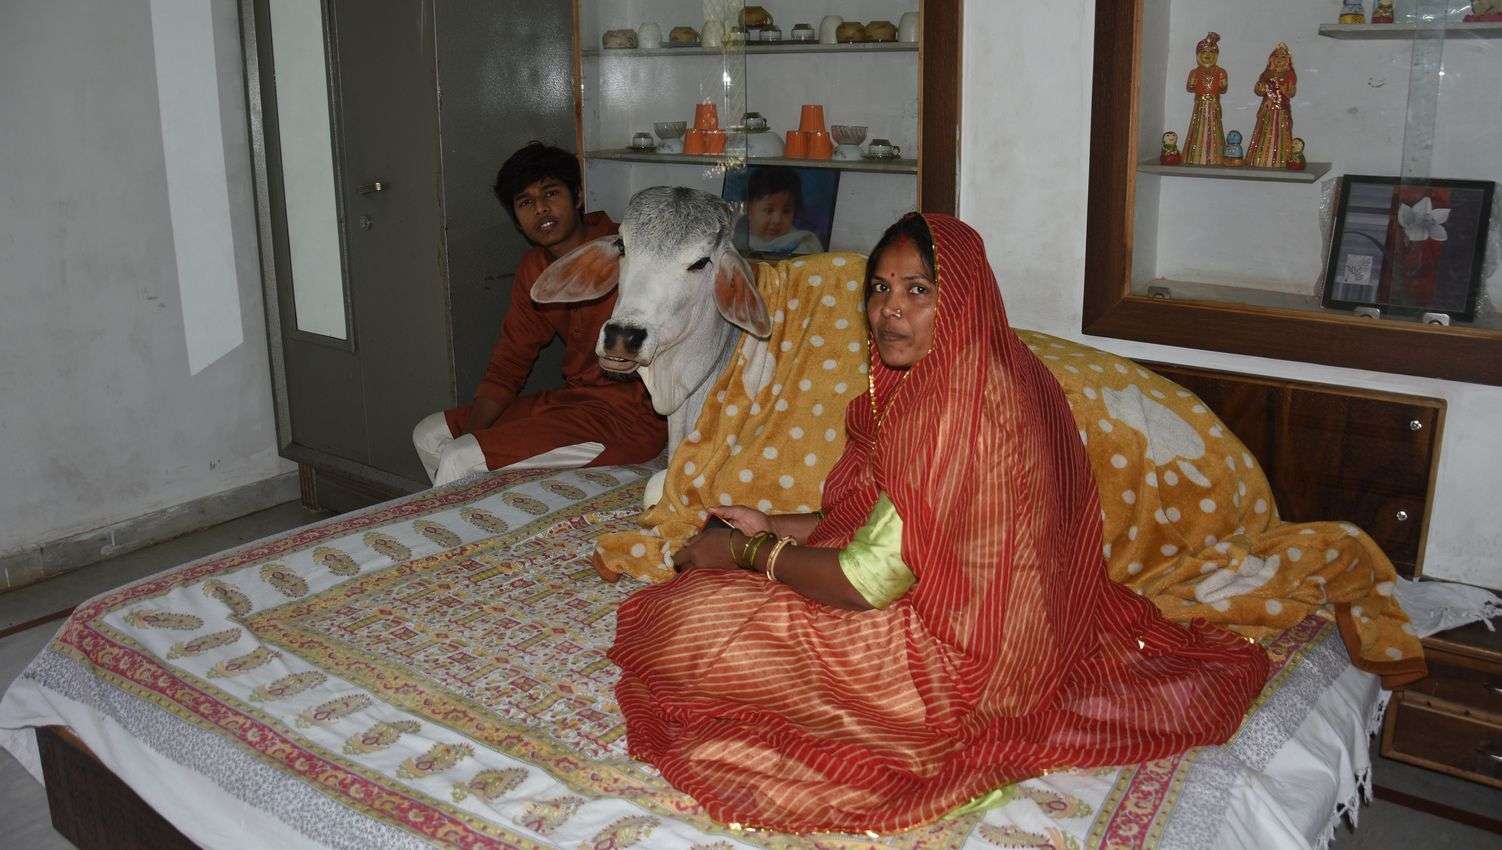 जोधपुर के इस घर में गाय का बछड़ा बाड़े में नहीं बेडरूम में सोता है, देखें खबर के साथ तस्वीरें... 